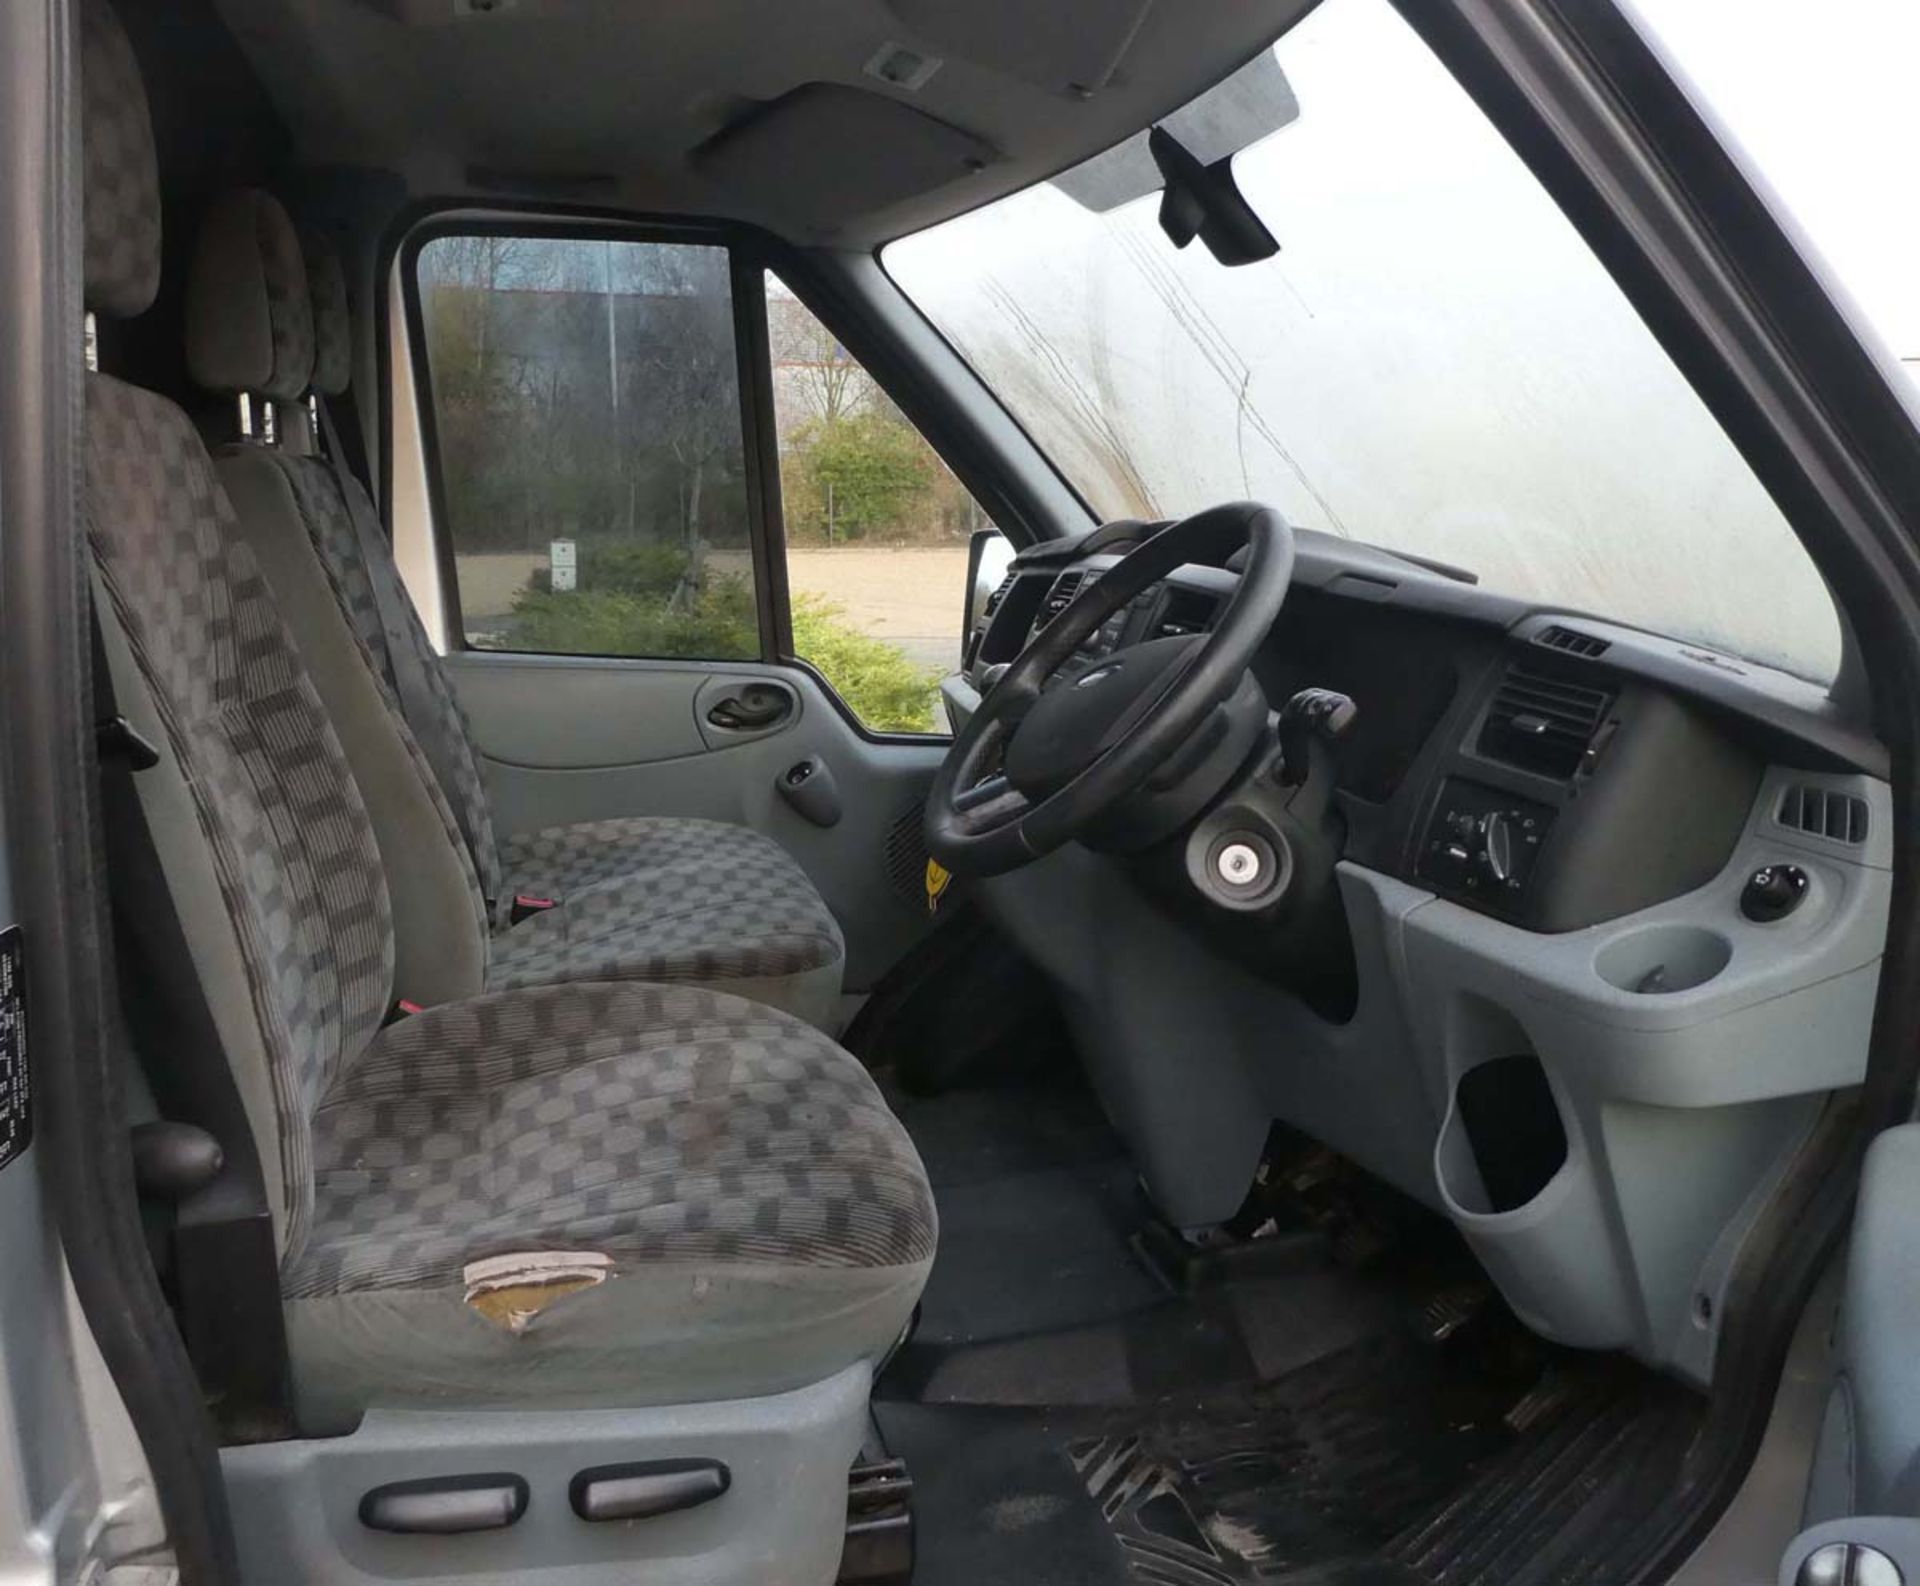 BJ12 WNU (2012) Ford Transit 125 T260 LTD, FWD panel van, MOT to 12.2.22, mileage showing 132'880, - Image 6 of 12